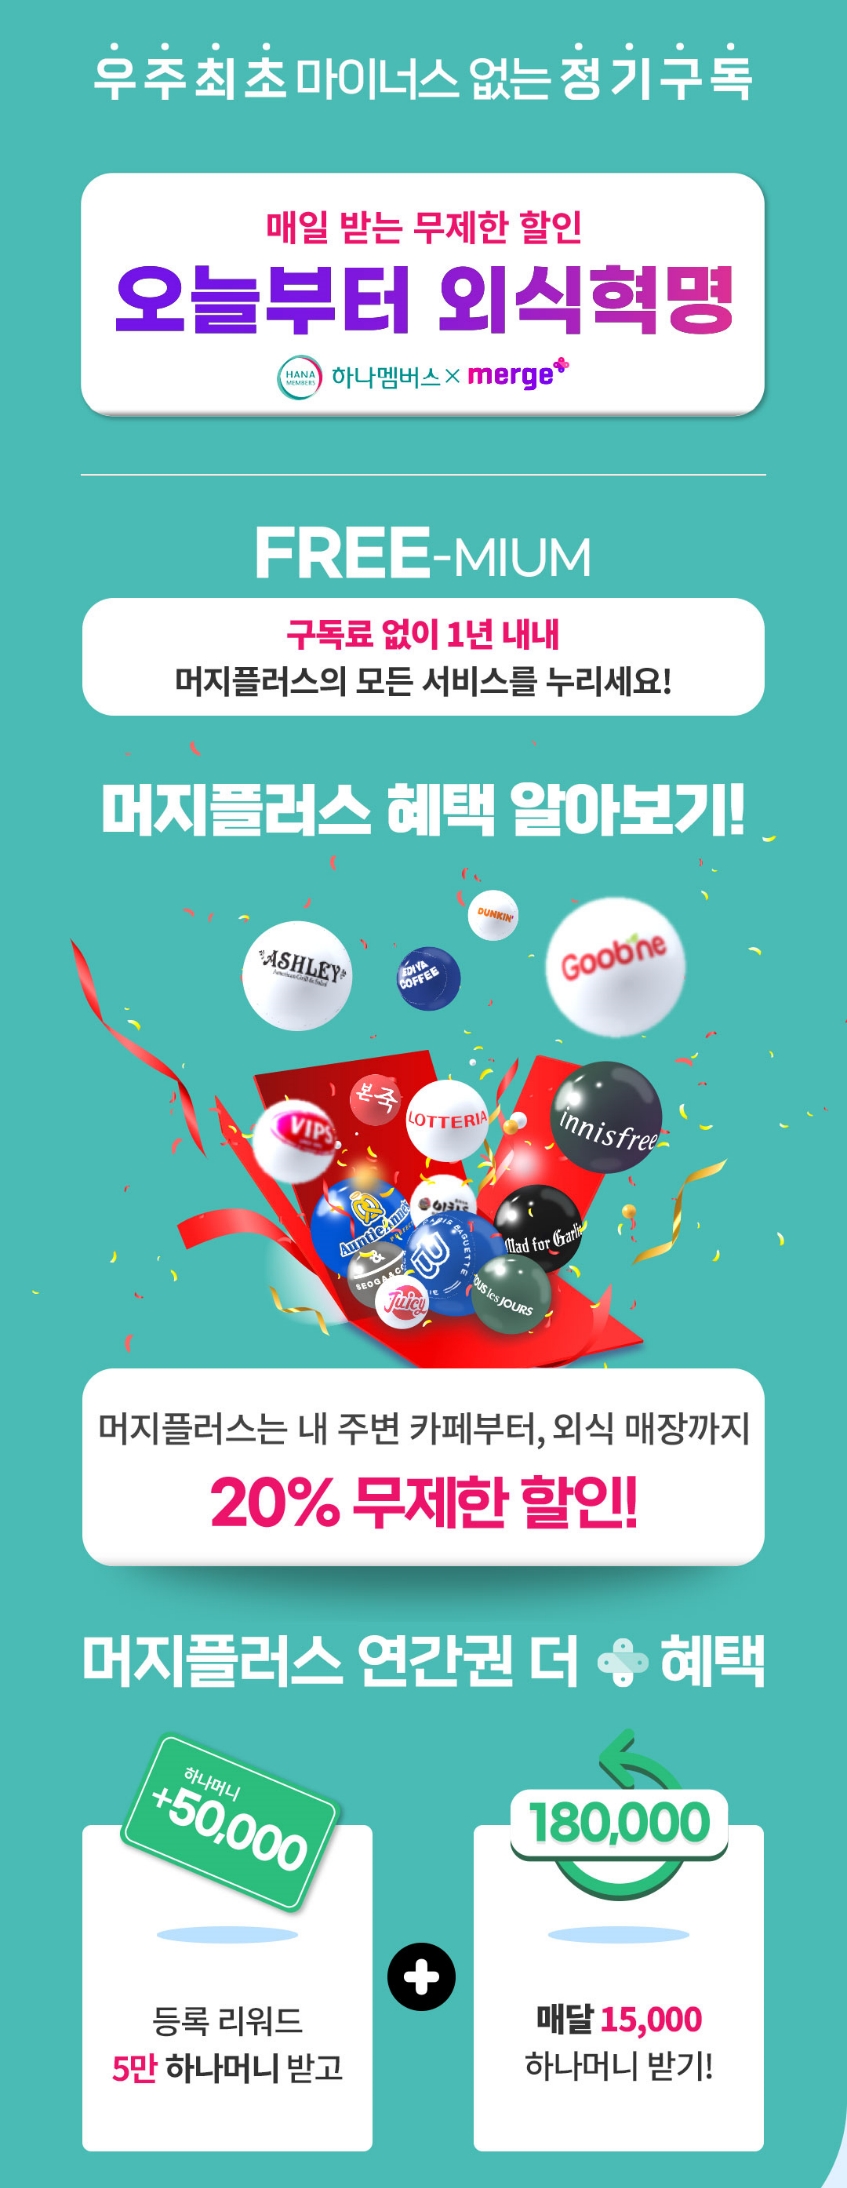 하나멤버스, 머지플러스 연간권 제휴 판매 이벤트 진행